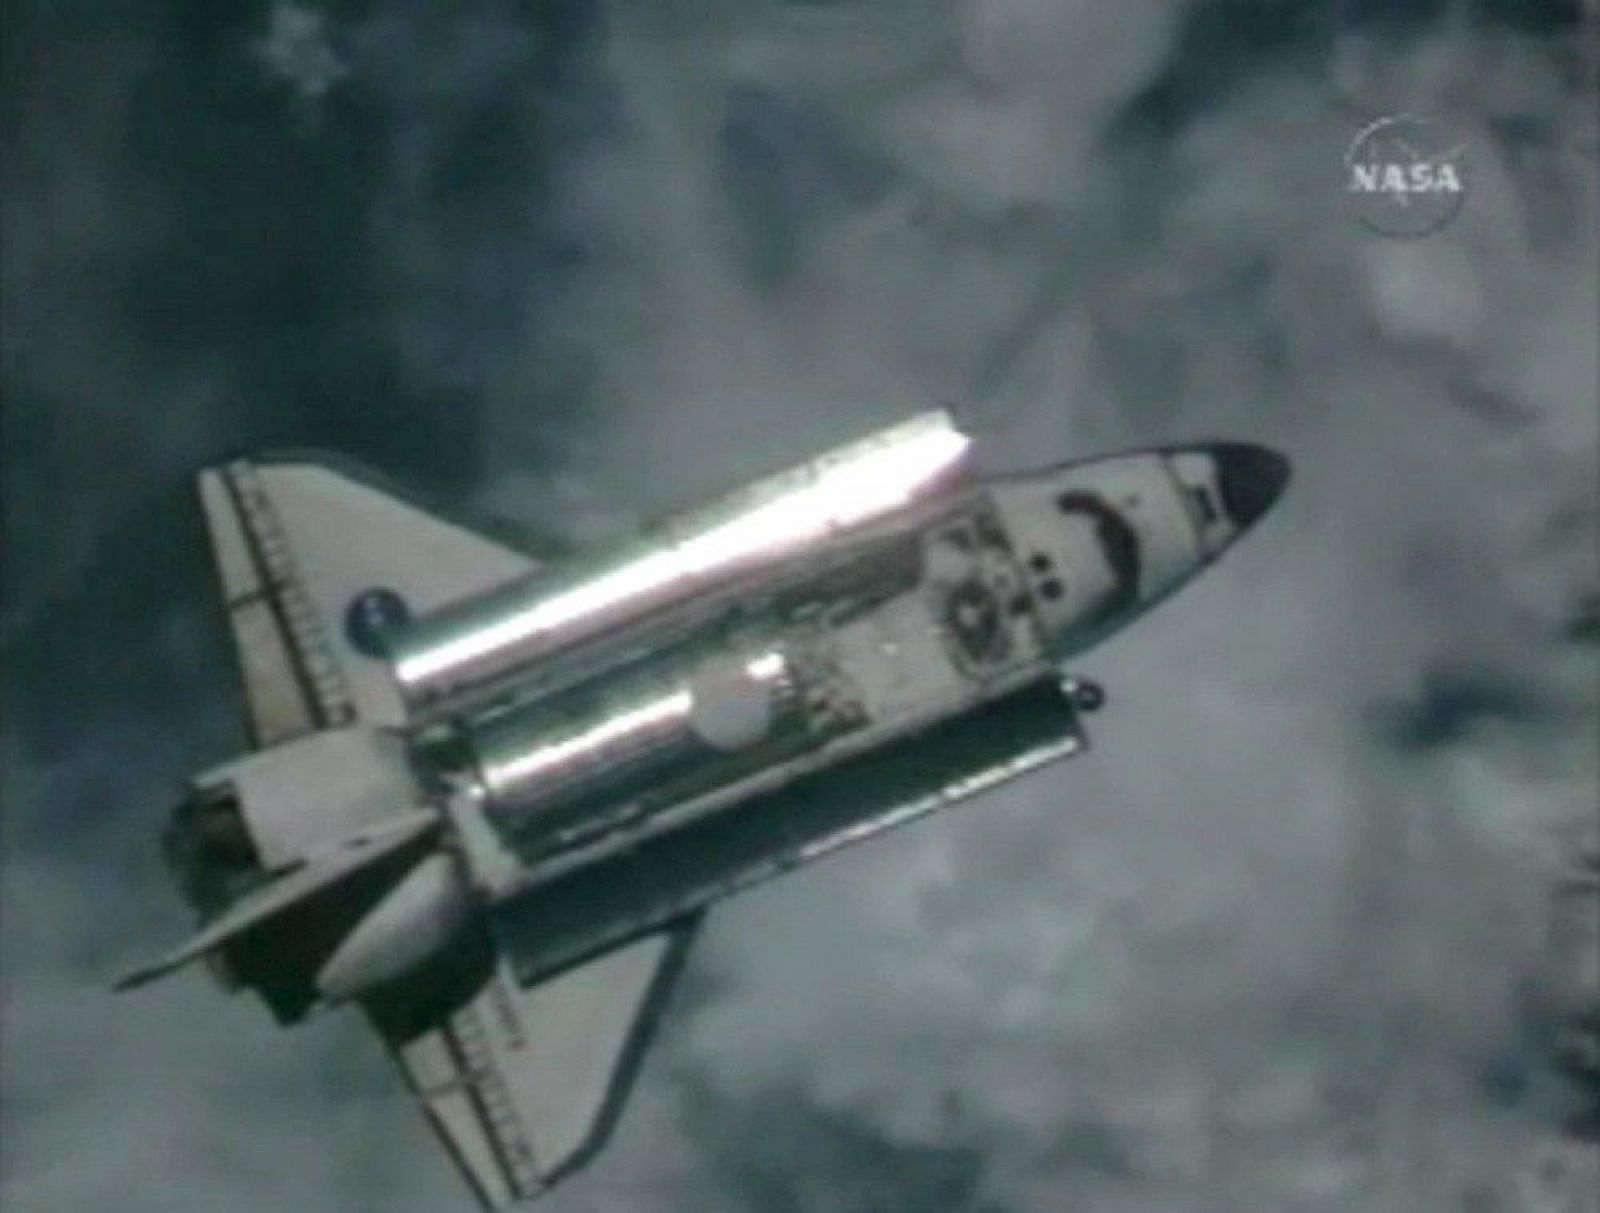 El "Discovery" durante las labores de acercamiento a la Estación Espacial Internacional (EEI) para realizar su acoplamiento.